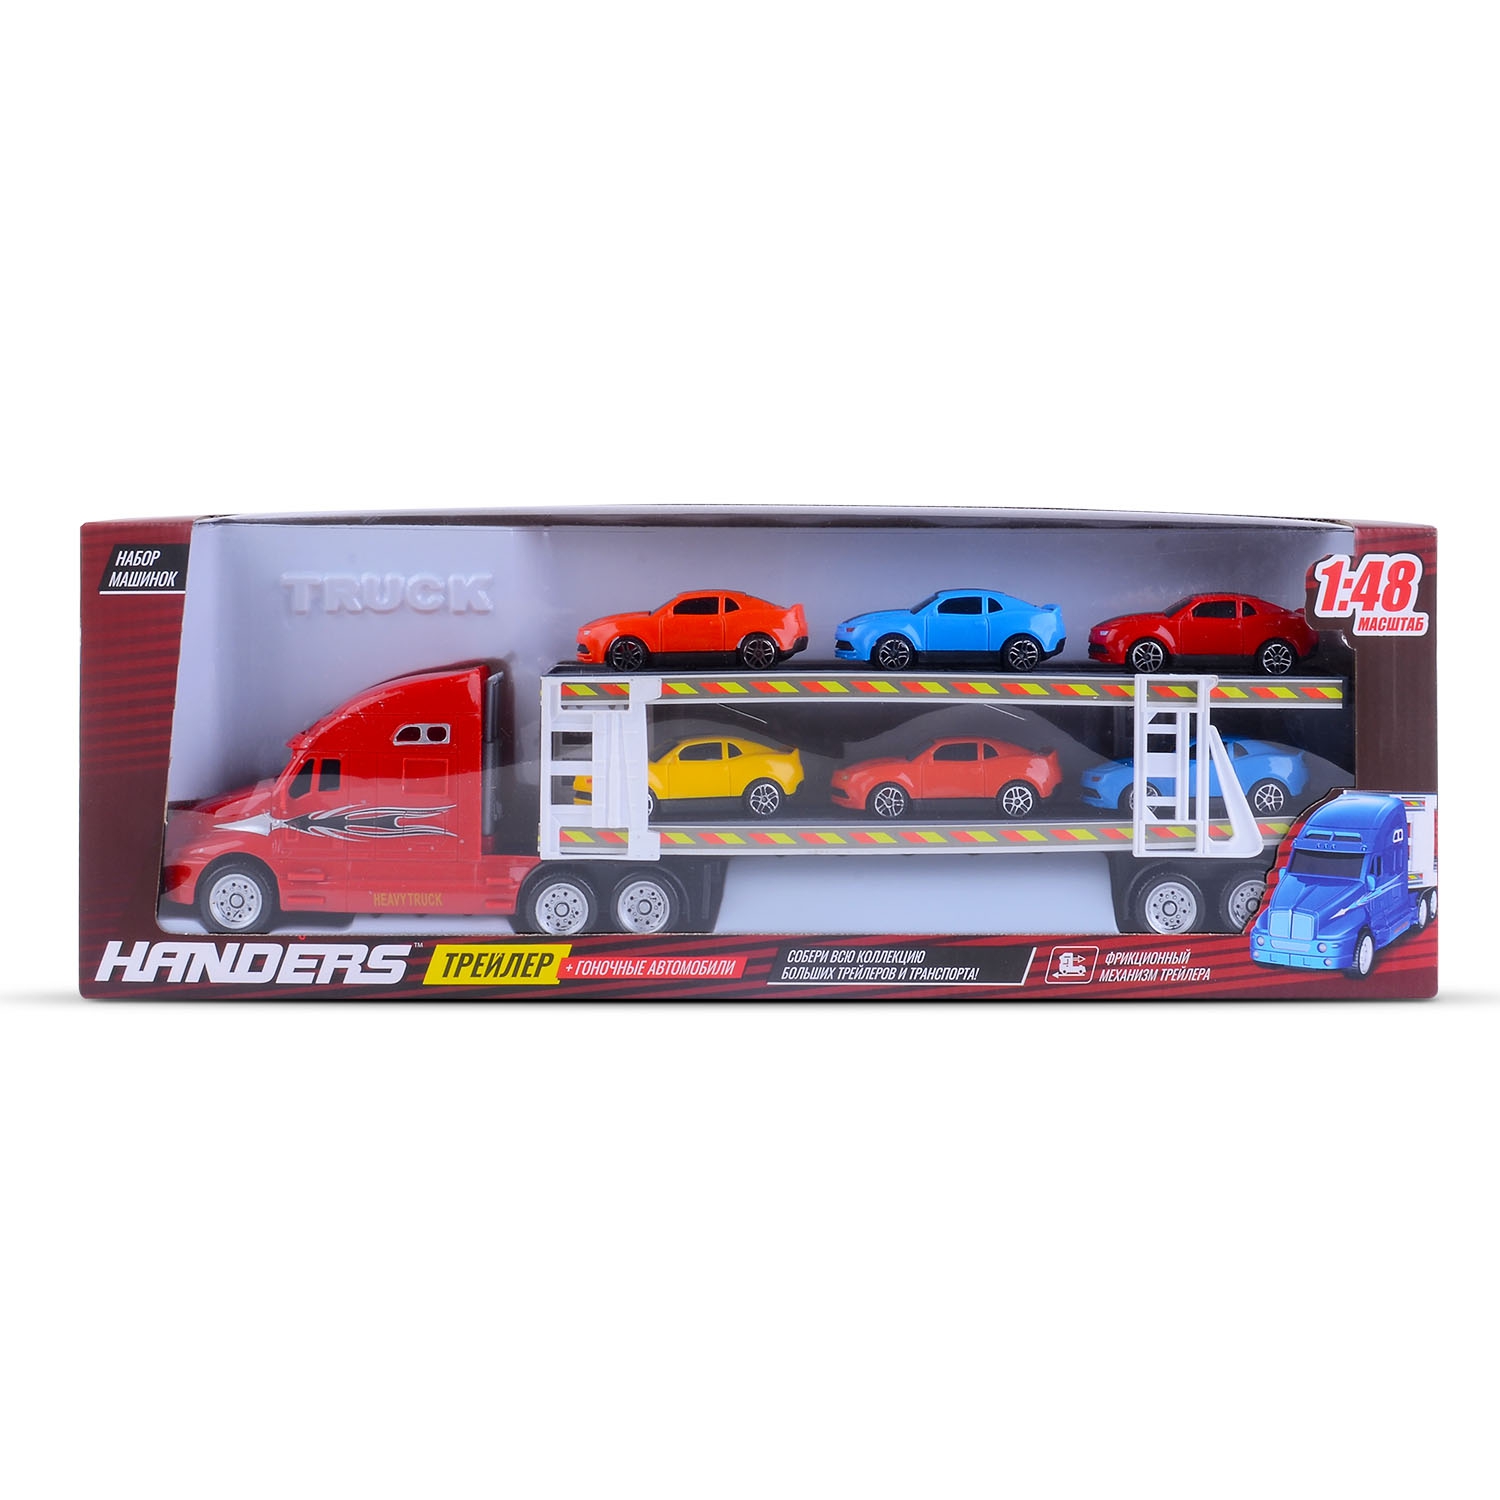 Набор машинок Handers Трейлер: гоночные автомобили (6 маш., инерц. трейлер 39 см, 1:48, красный)